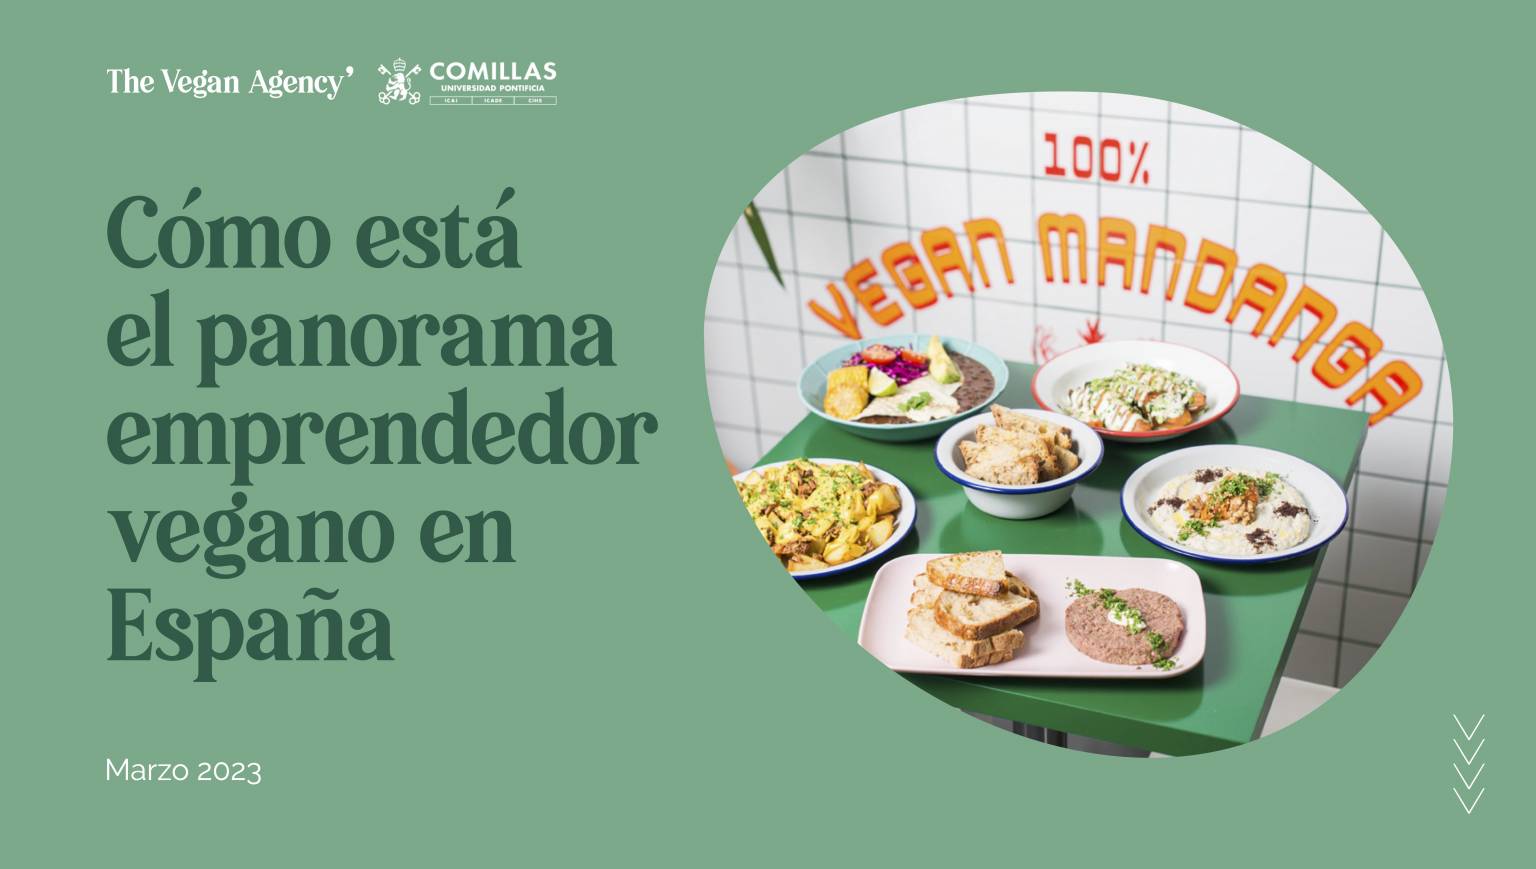 Segundo informe sobre las empresas veganas en España